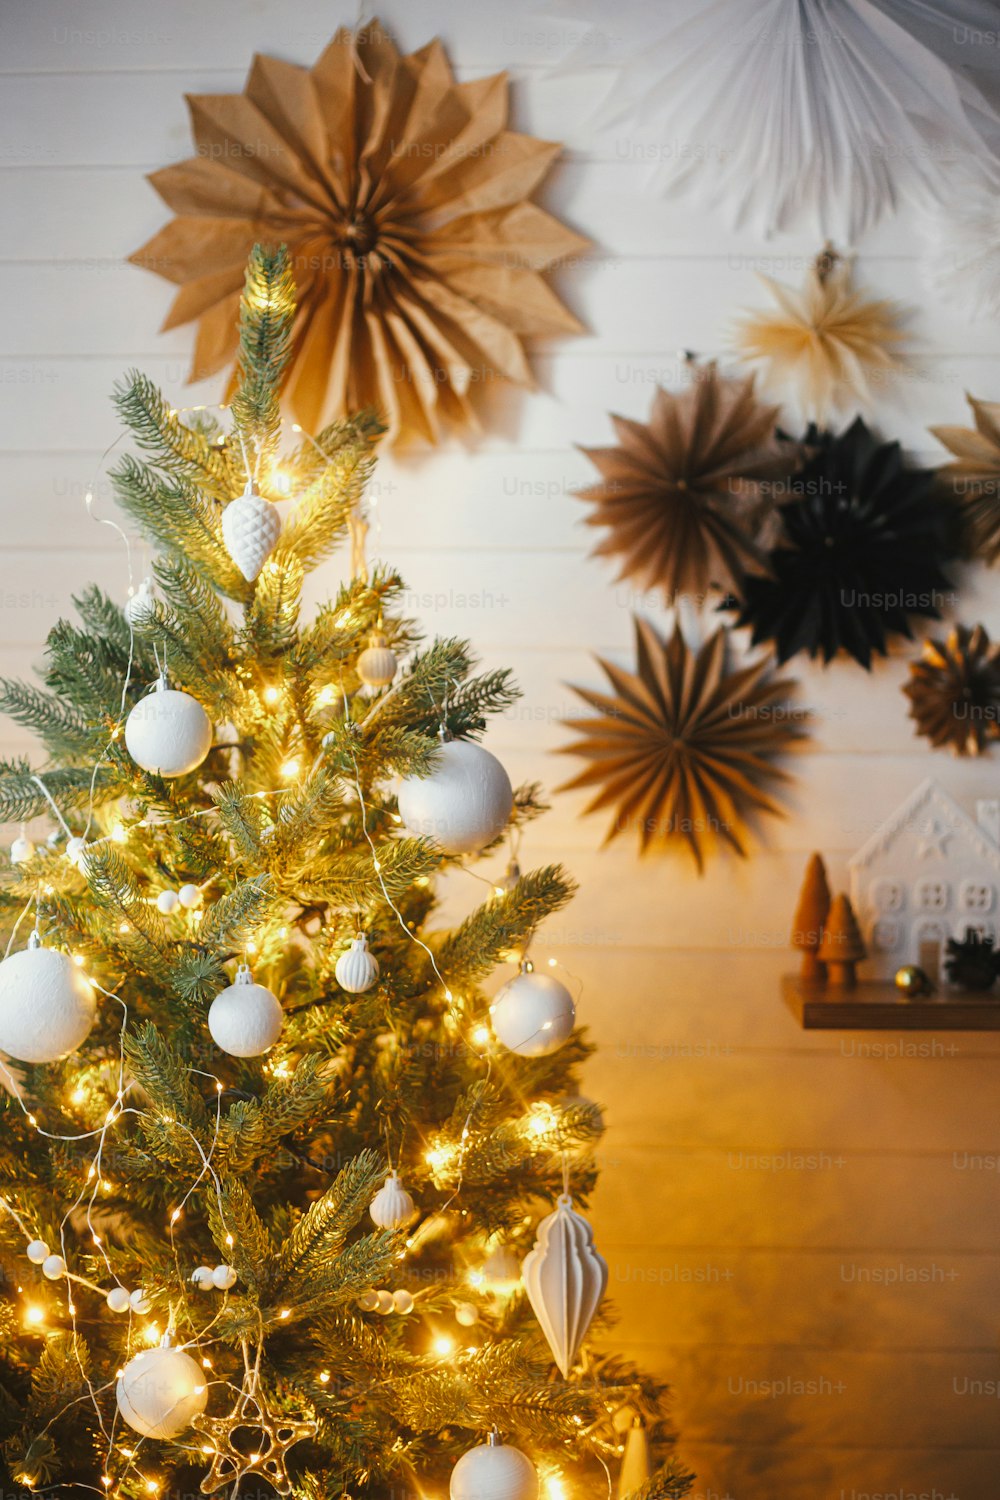 Foto Elegante árbol de Navidad decorado con modernos adornos blancos y luces  doradas sobre el fondo de una pared blanca con estrellas de papel.  Habitación escandinava festiva atmosférica. Nochebuena – Árbol de